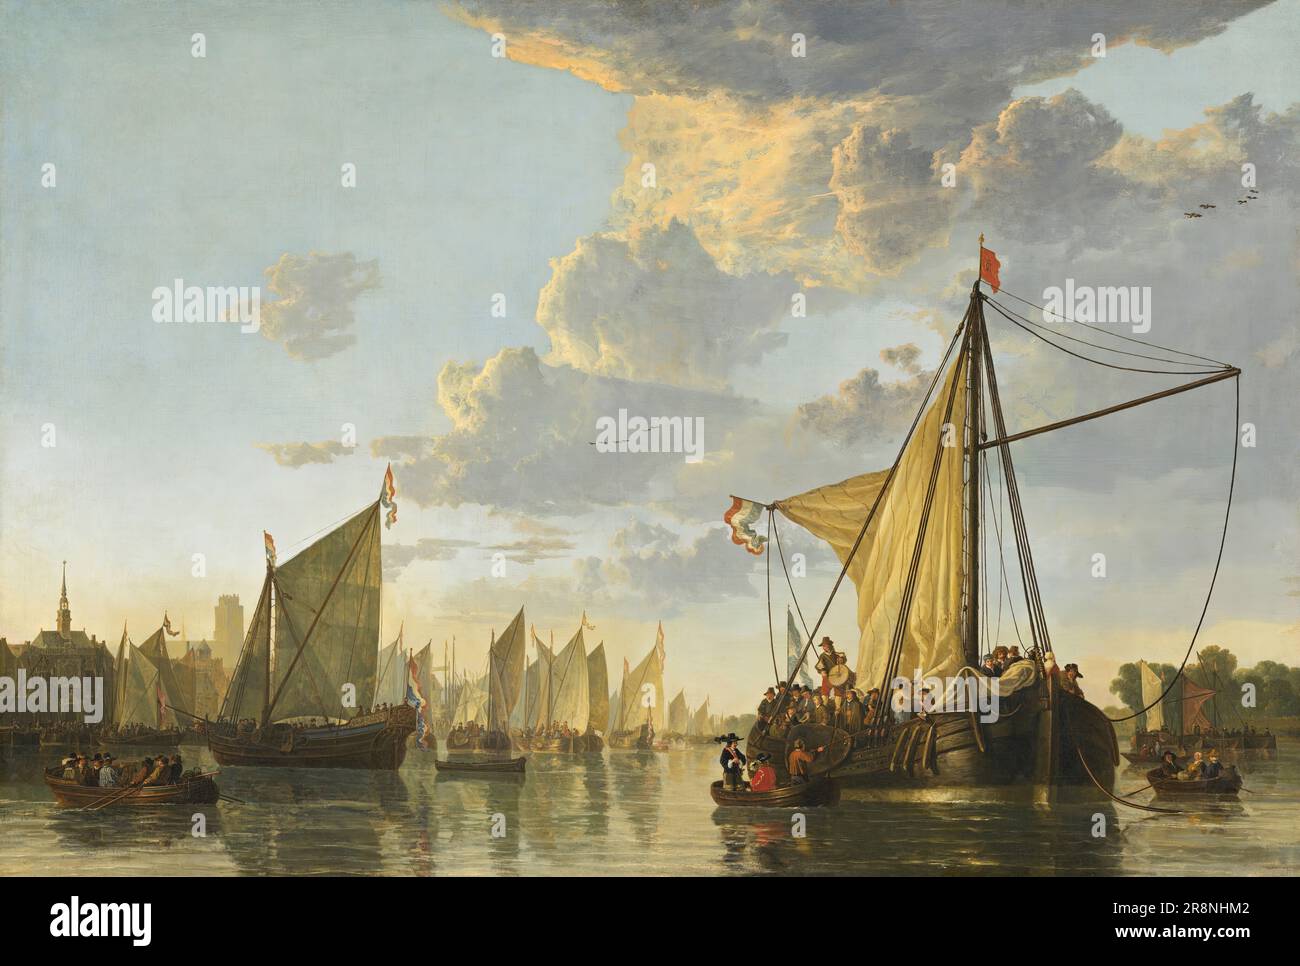 Les Maas à Dordrecht par Aelbert Cuyp, 1650, huile sur toile, 114,9 x 170,2 cm, National Gallery of Art, Landover, Maryland (Etats-Unis). Banque D'Images